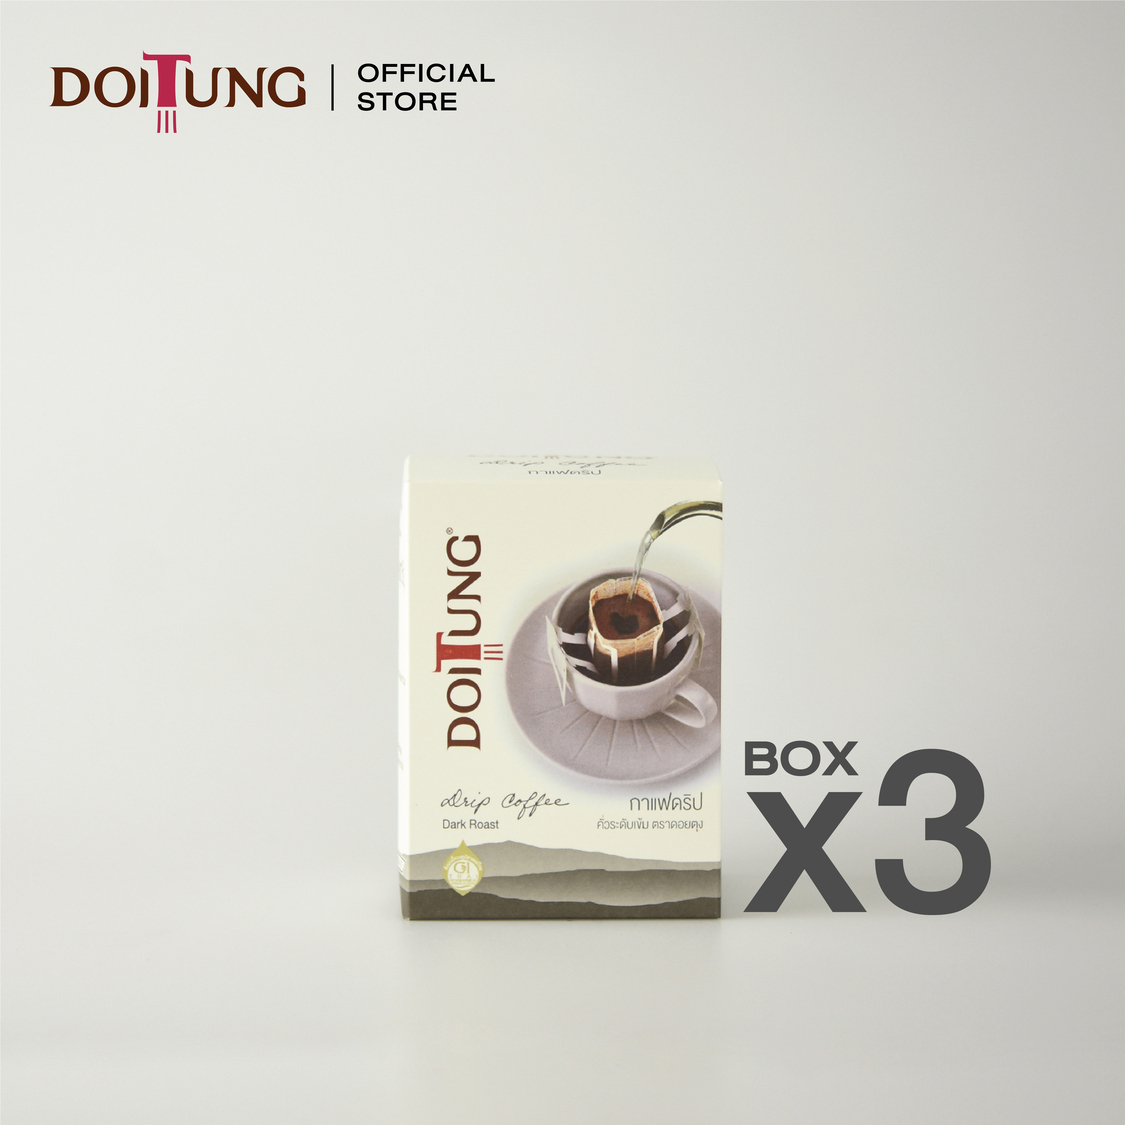 DoiTung Drip Coffee Dark Roast (60 g.) Set 3 กาแฟดริปในถุงกรอง สูตร ดาร์ก โรสต์ (60 กรัม) 3 กล่อง ตรา ดอยตุง